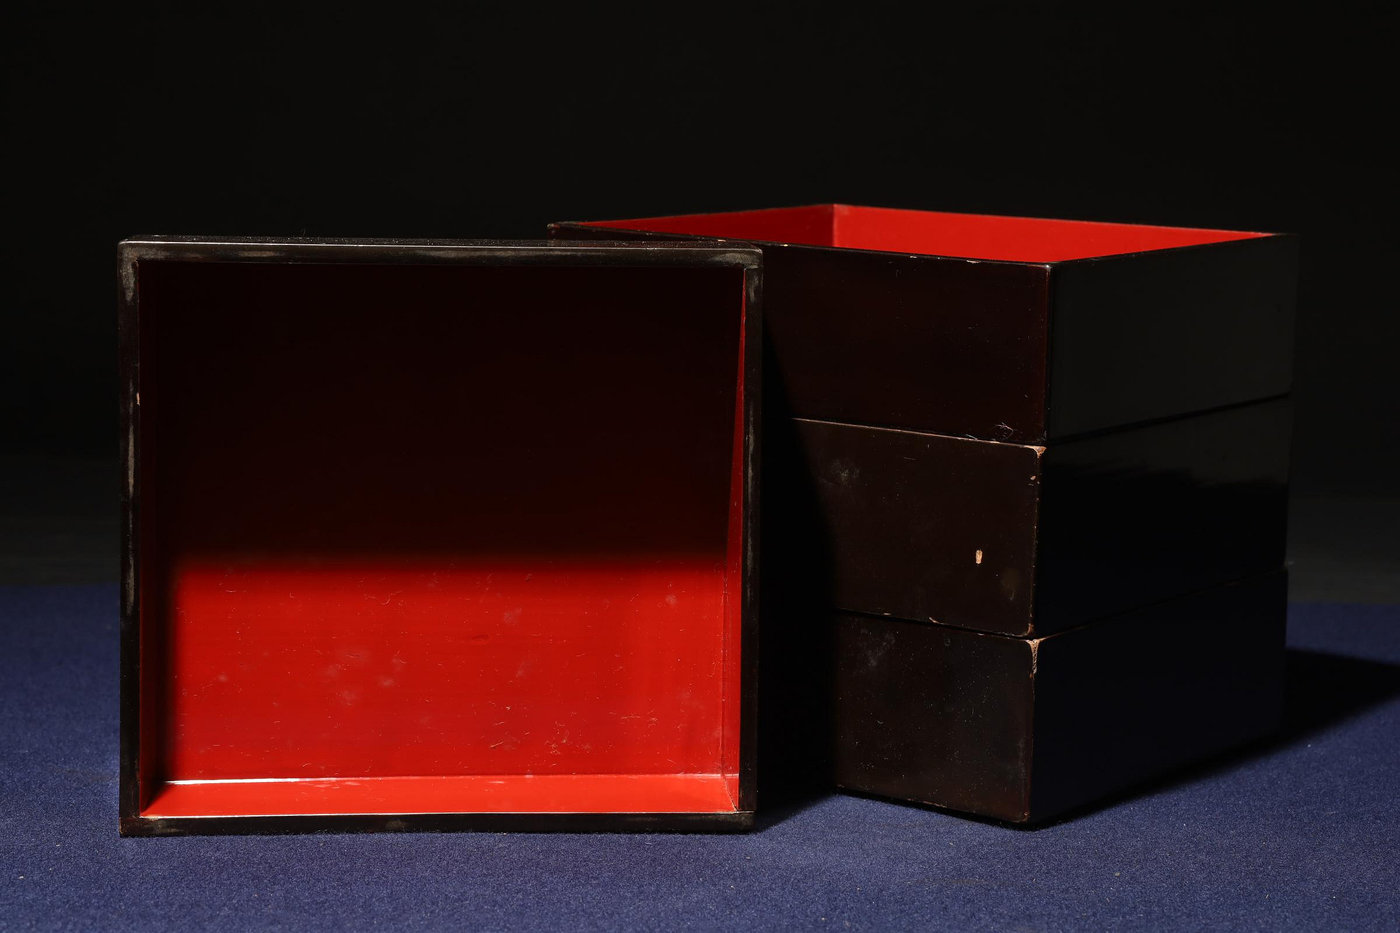 3/1結標木胎漆器重箱茶台C021033 -漆碗漆盤漆盒茶箱重箱承盤收藏文具盒 